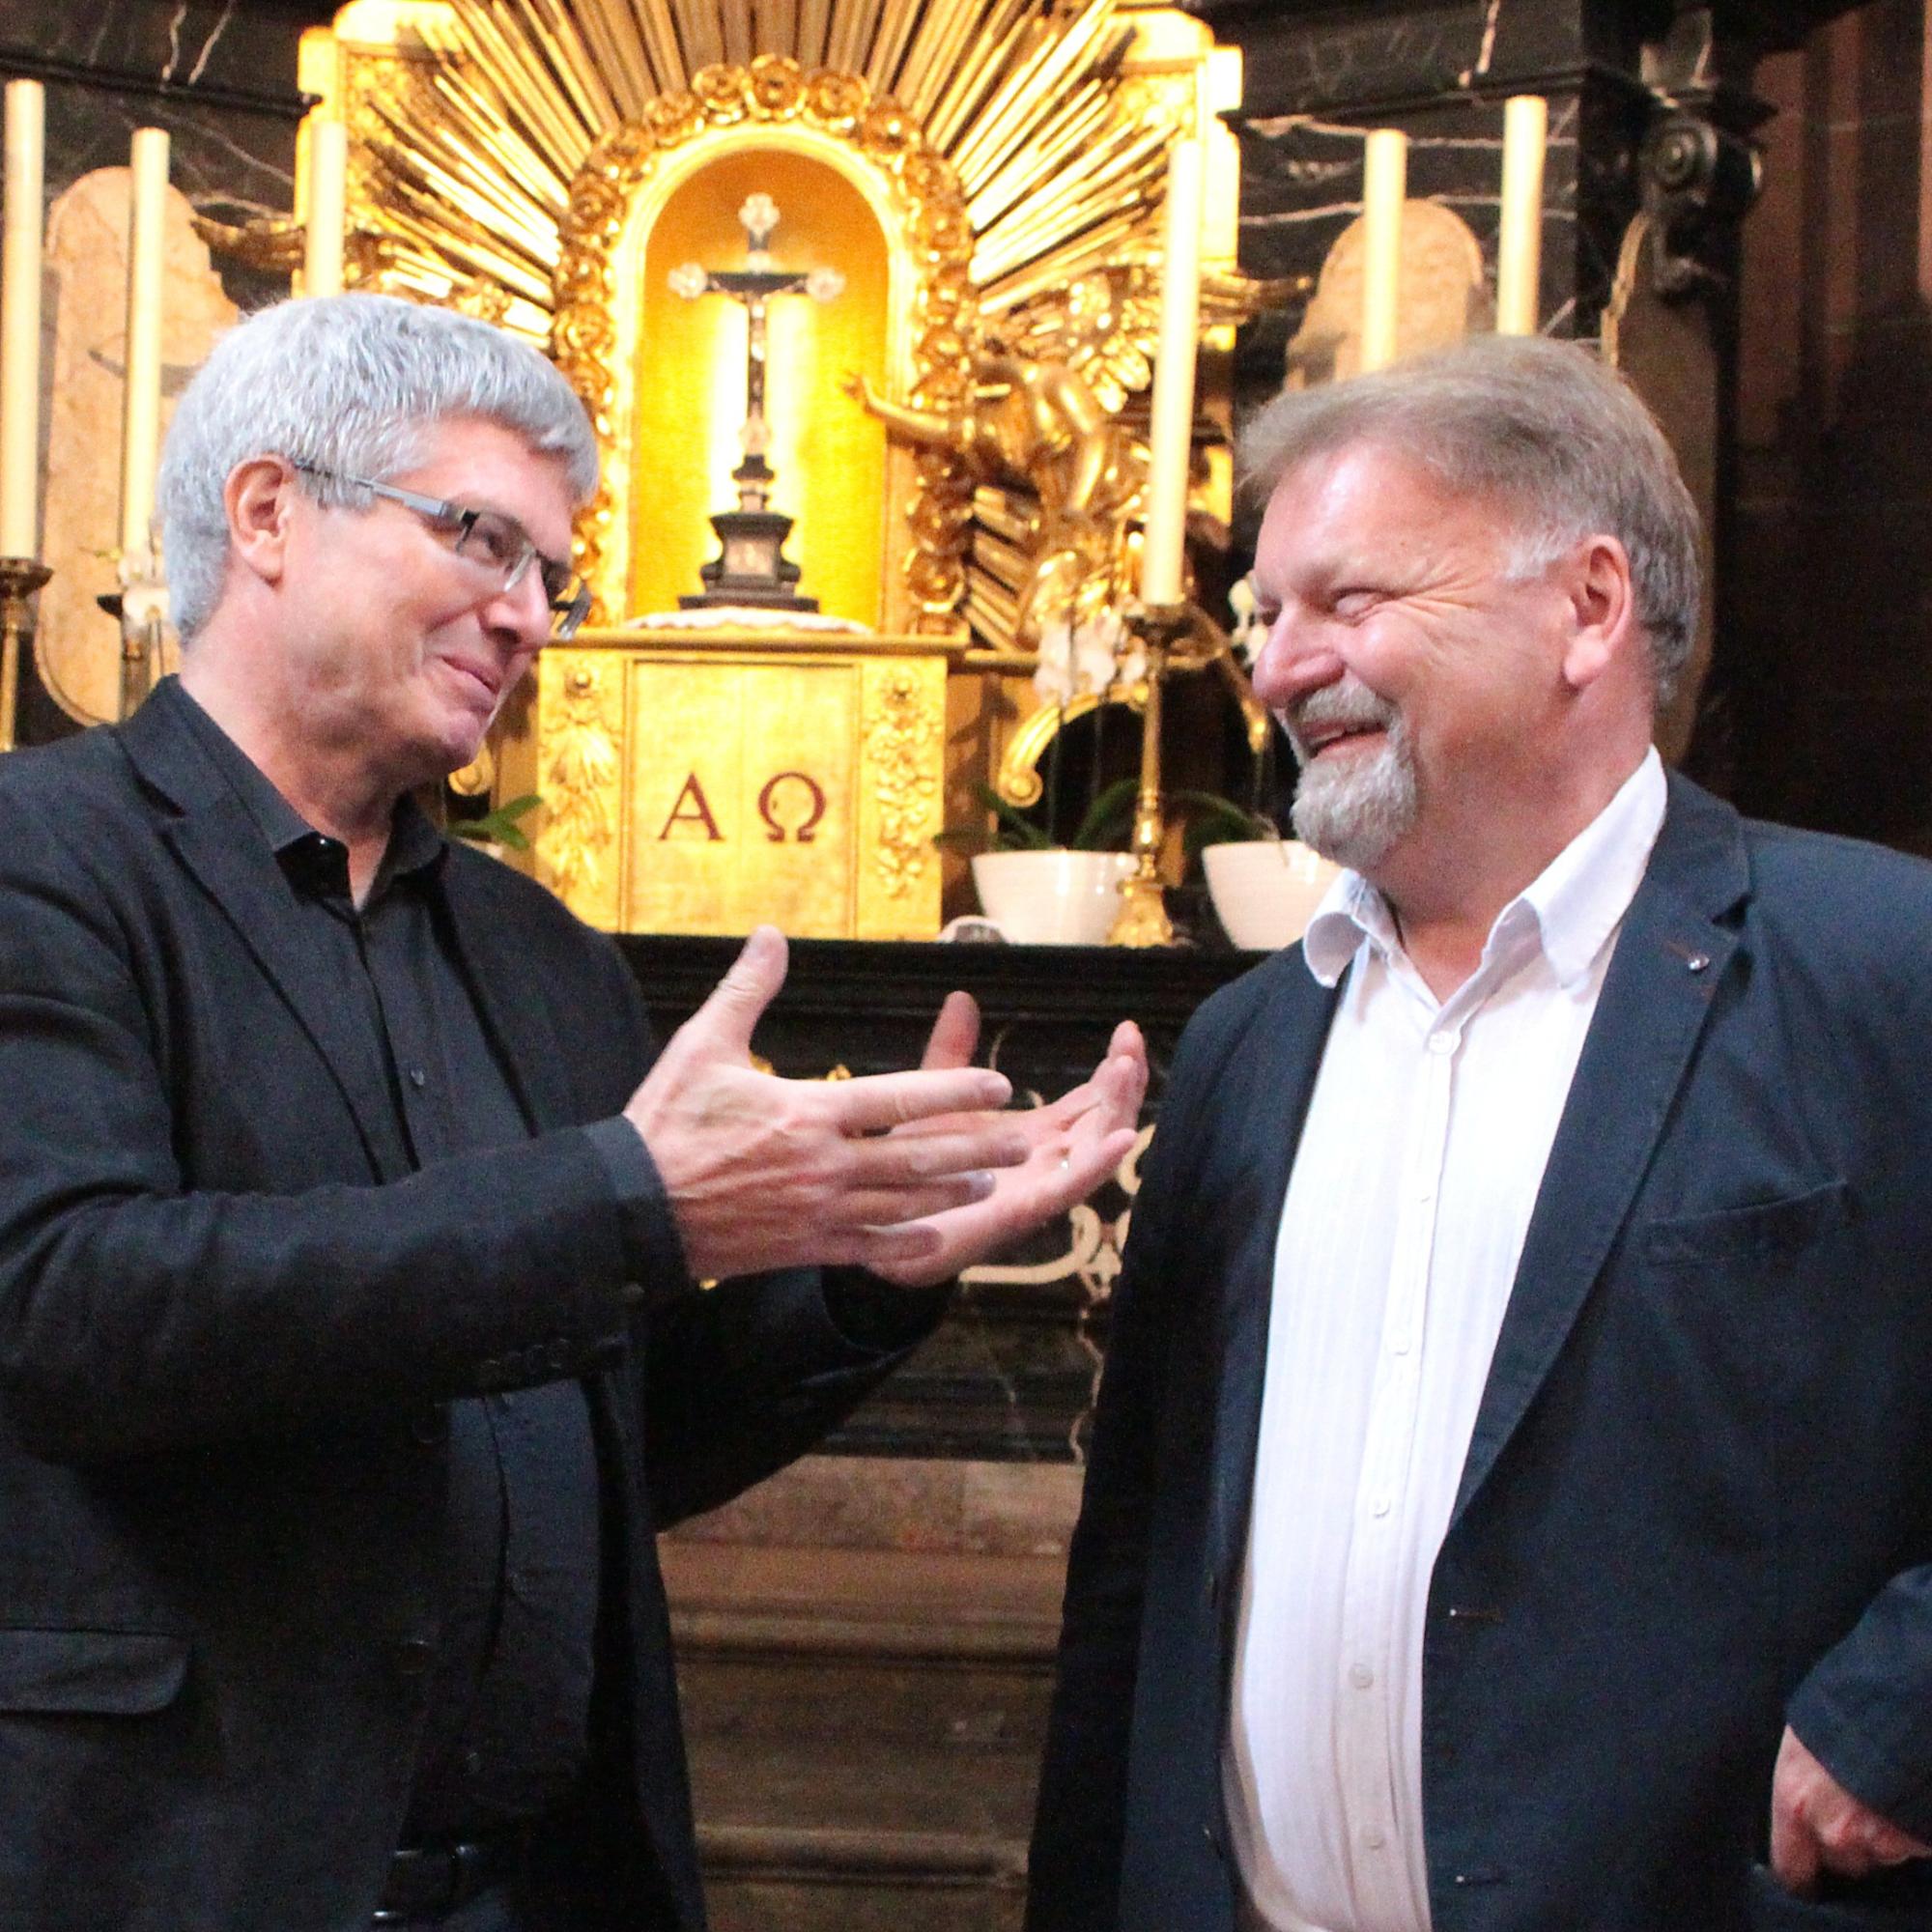 Thomas Klumb (rechts) im Mai 2018 bei der Vorstellung des VR-Brillen-Projektes im Wormser Dom zusammen mit Dr. Michael Klein, Leiter des Institutes für Neue Medien Frankfurt, welches das VR-Projekt maßgeblich unterstützt hat.